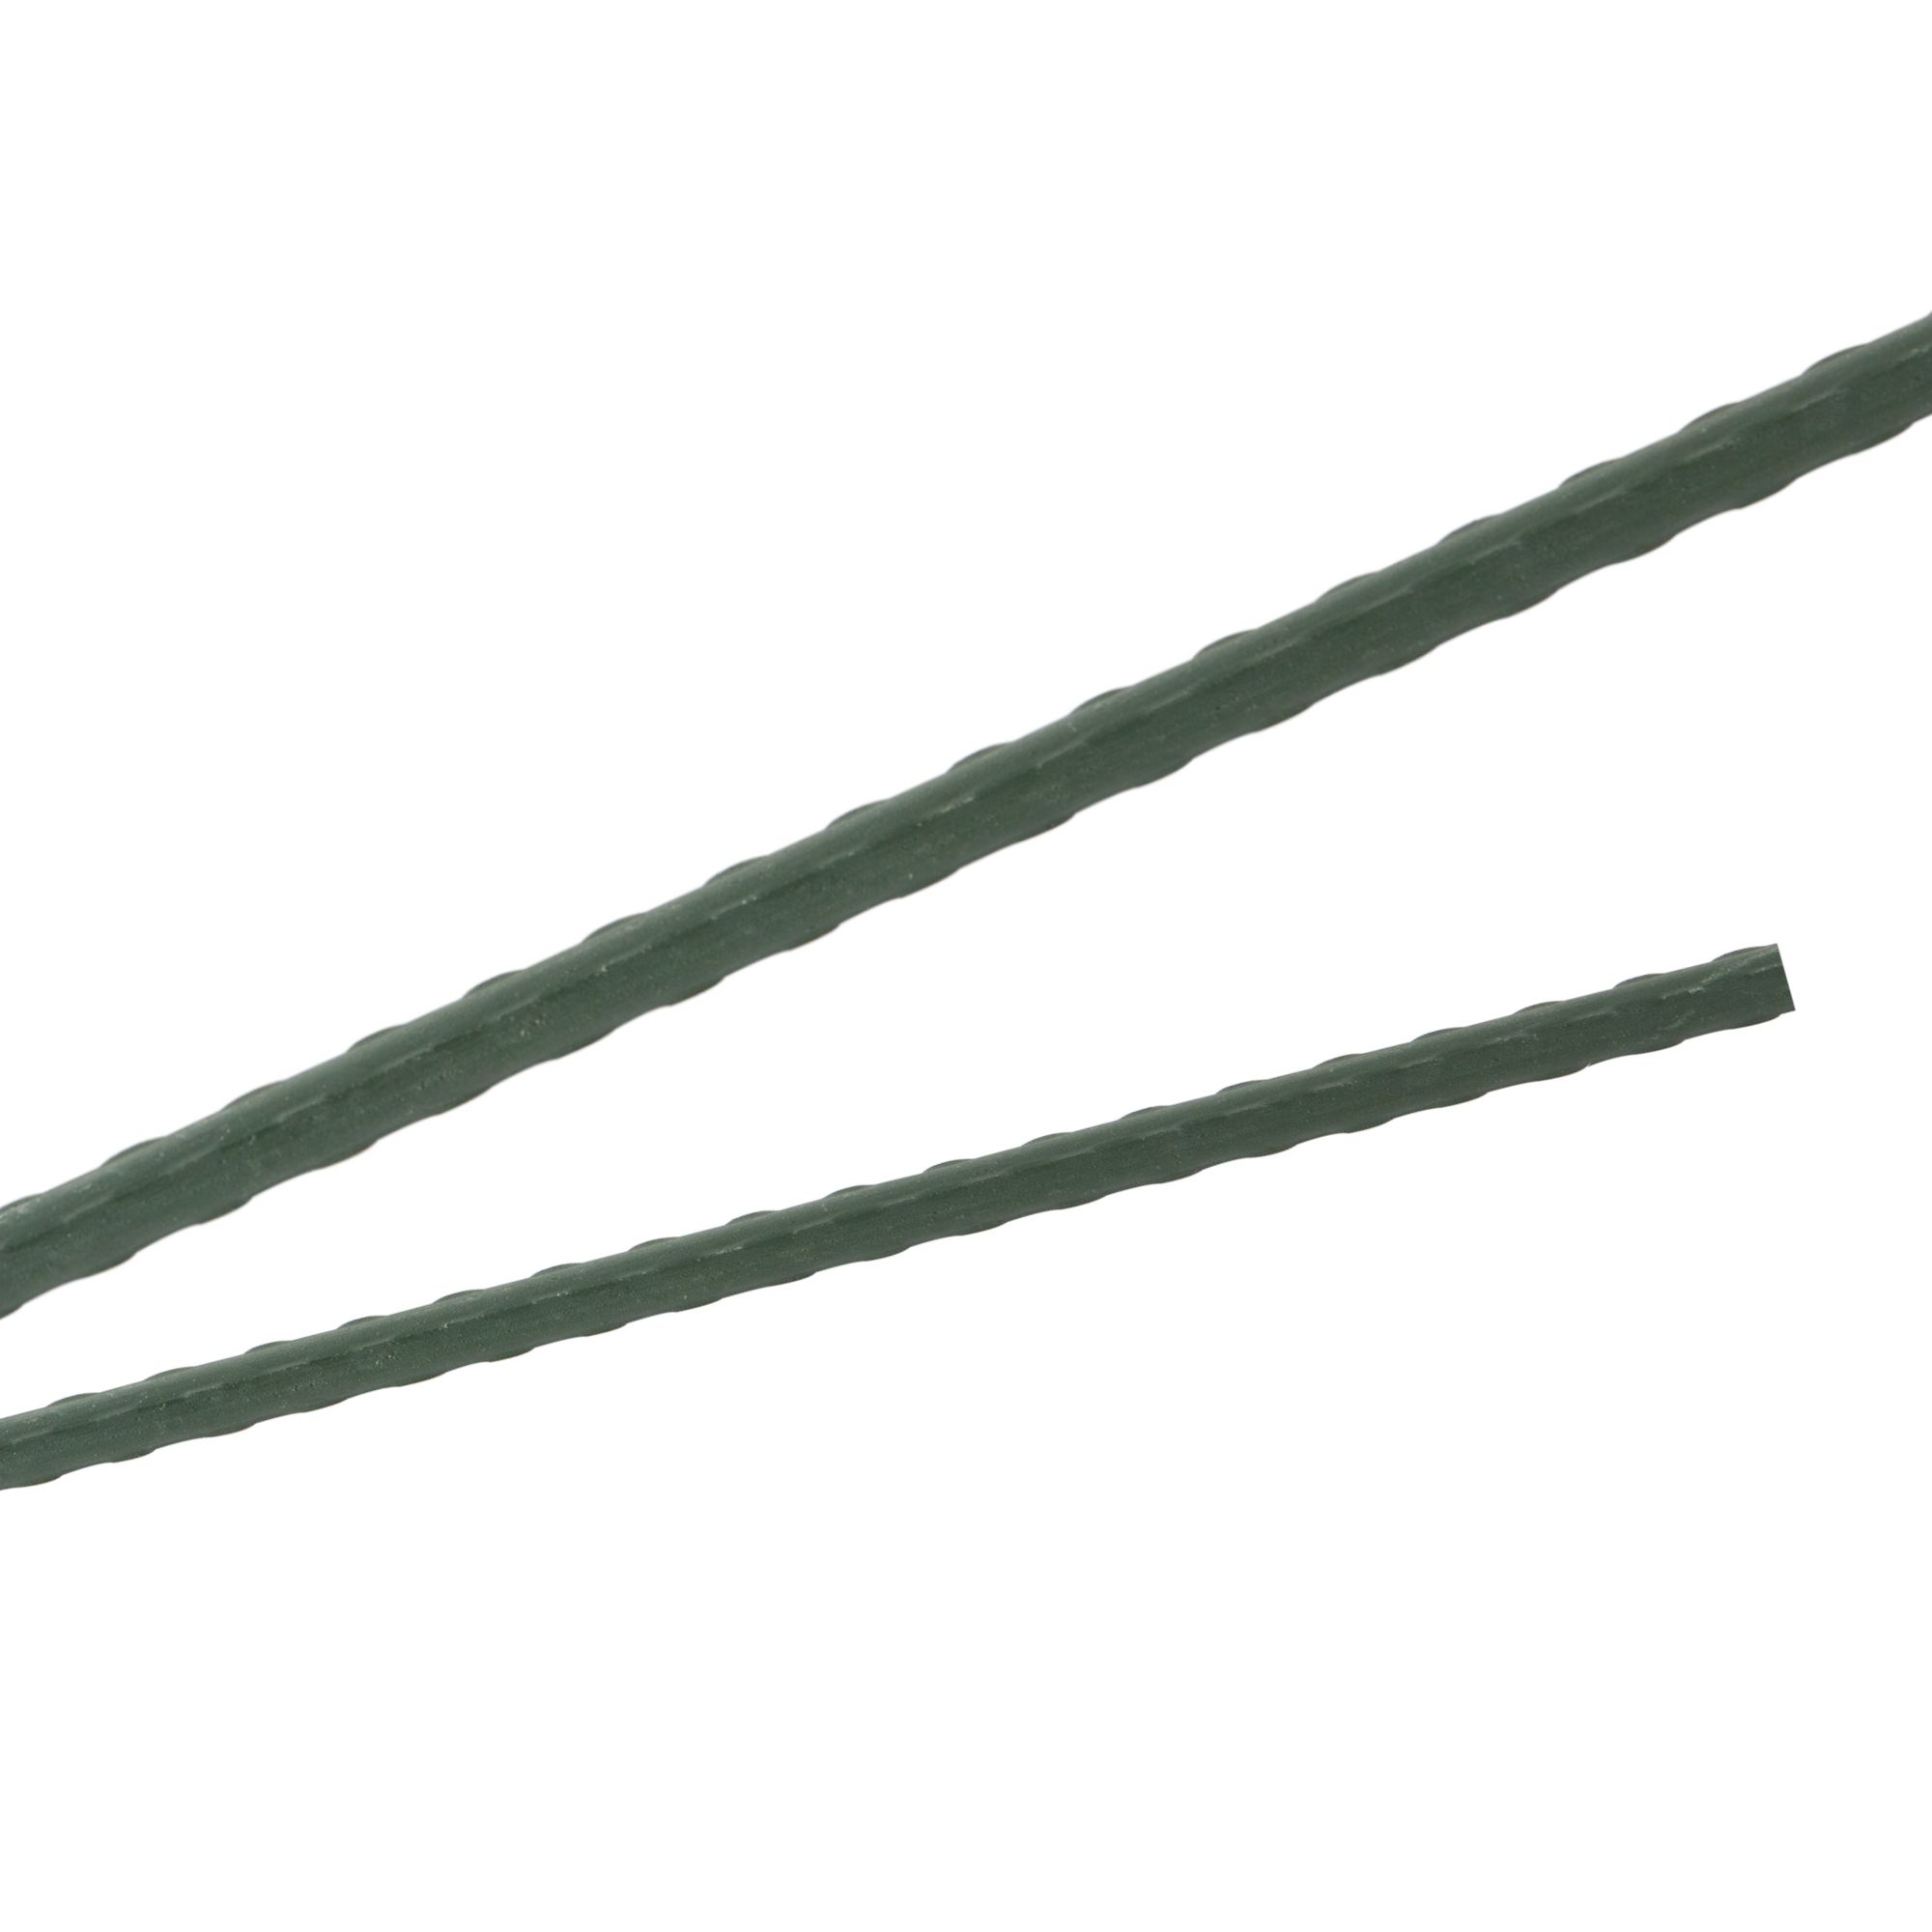 Tyč podpěrná, 11mm, 180cm, kov+PVC, zelená 0.139000 Kg GIGA Sklad20 45656 127